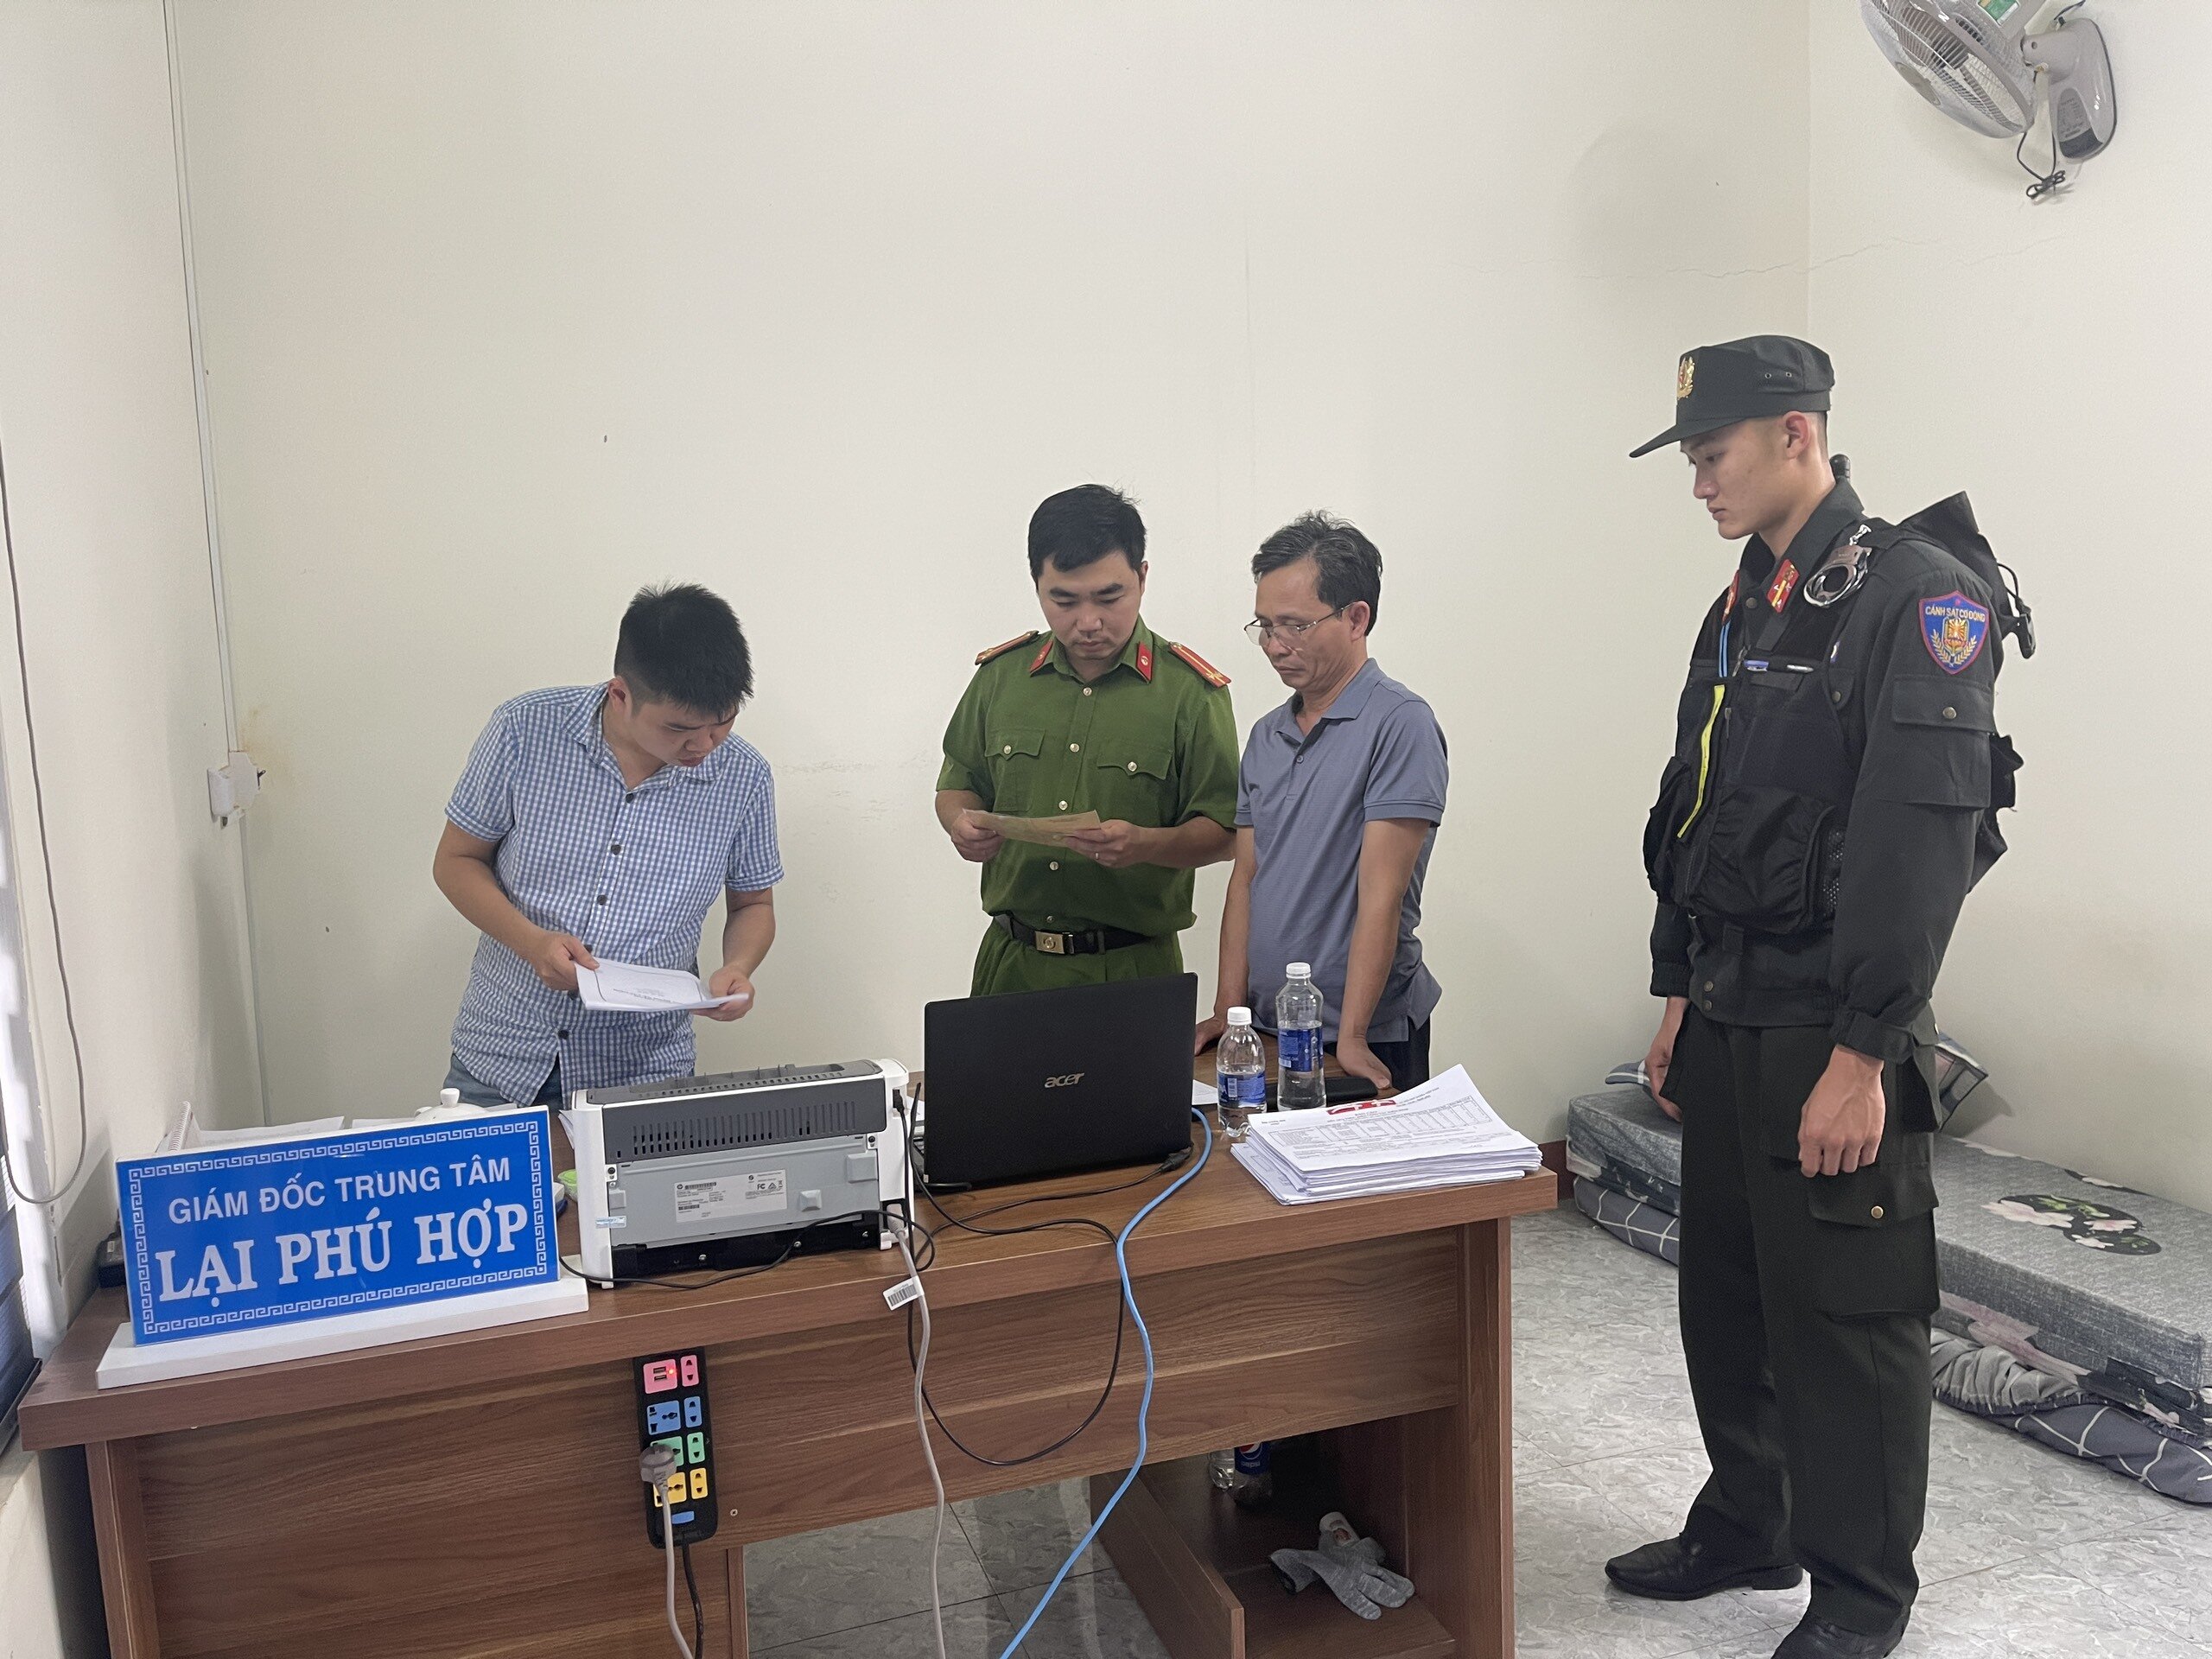 Giám đốc trung tâm đăng kiểm ở Đắk Lắk bị bắt - 2